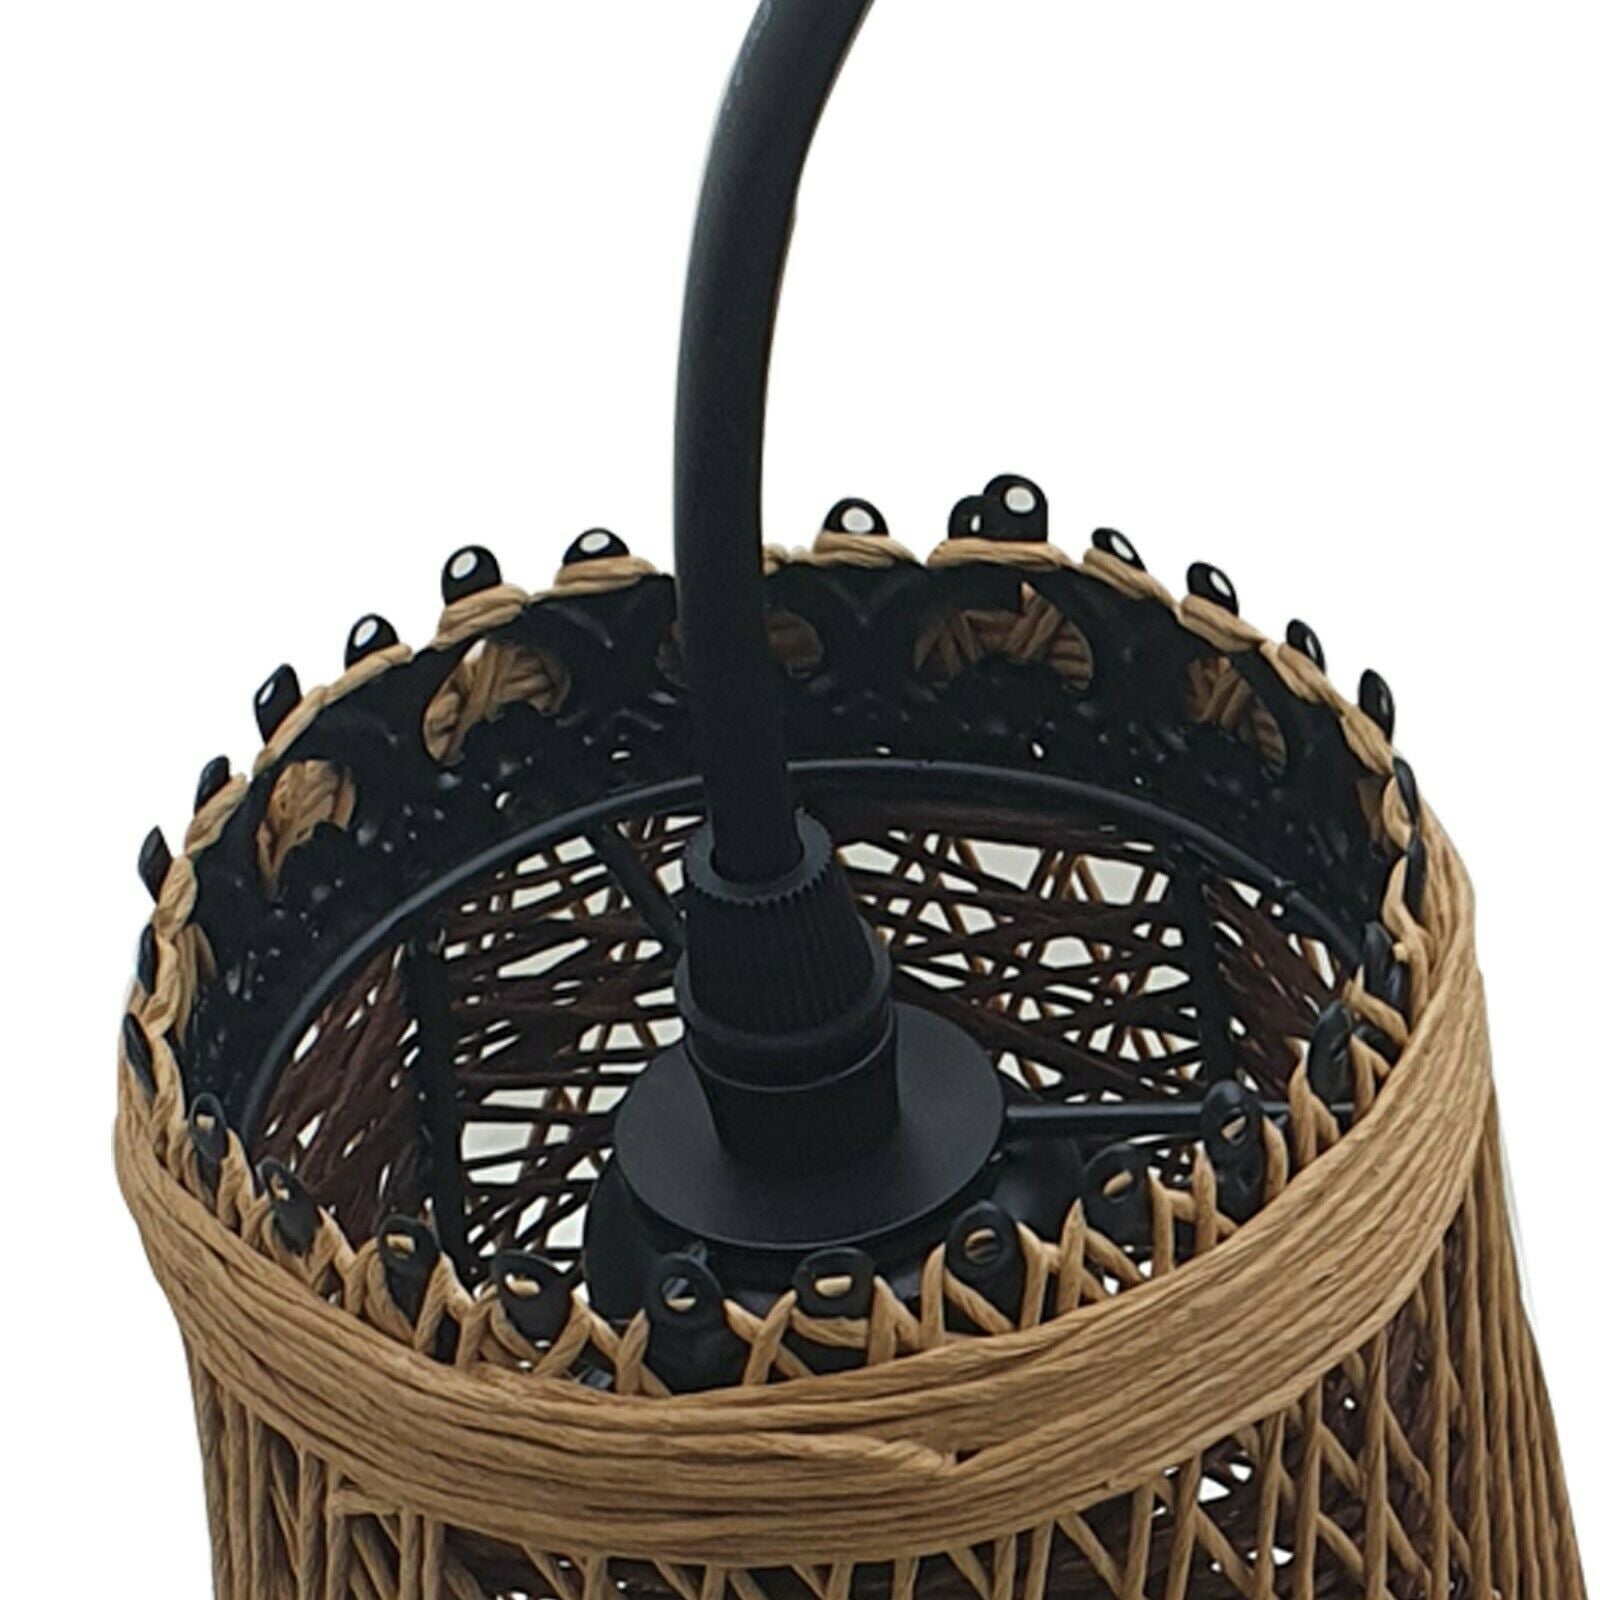 Modern Wicker Rattan Basket Style Ceiling Pendant Light Shade~1961 - LEDSone UK Ltd